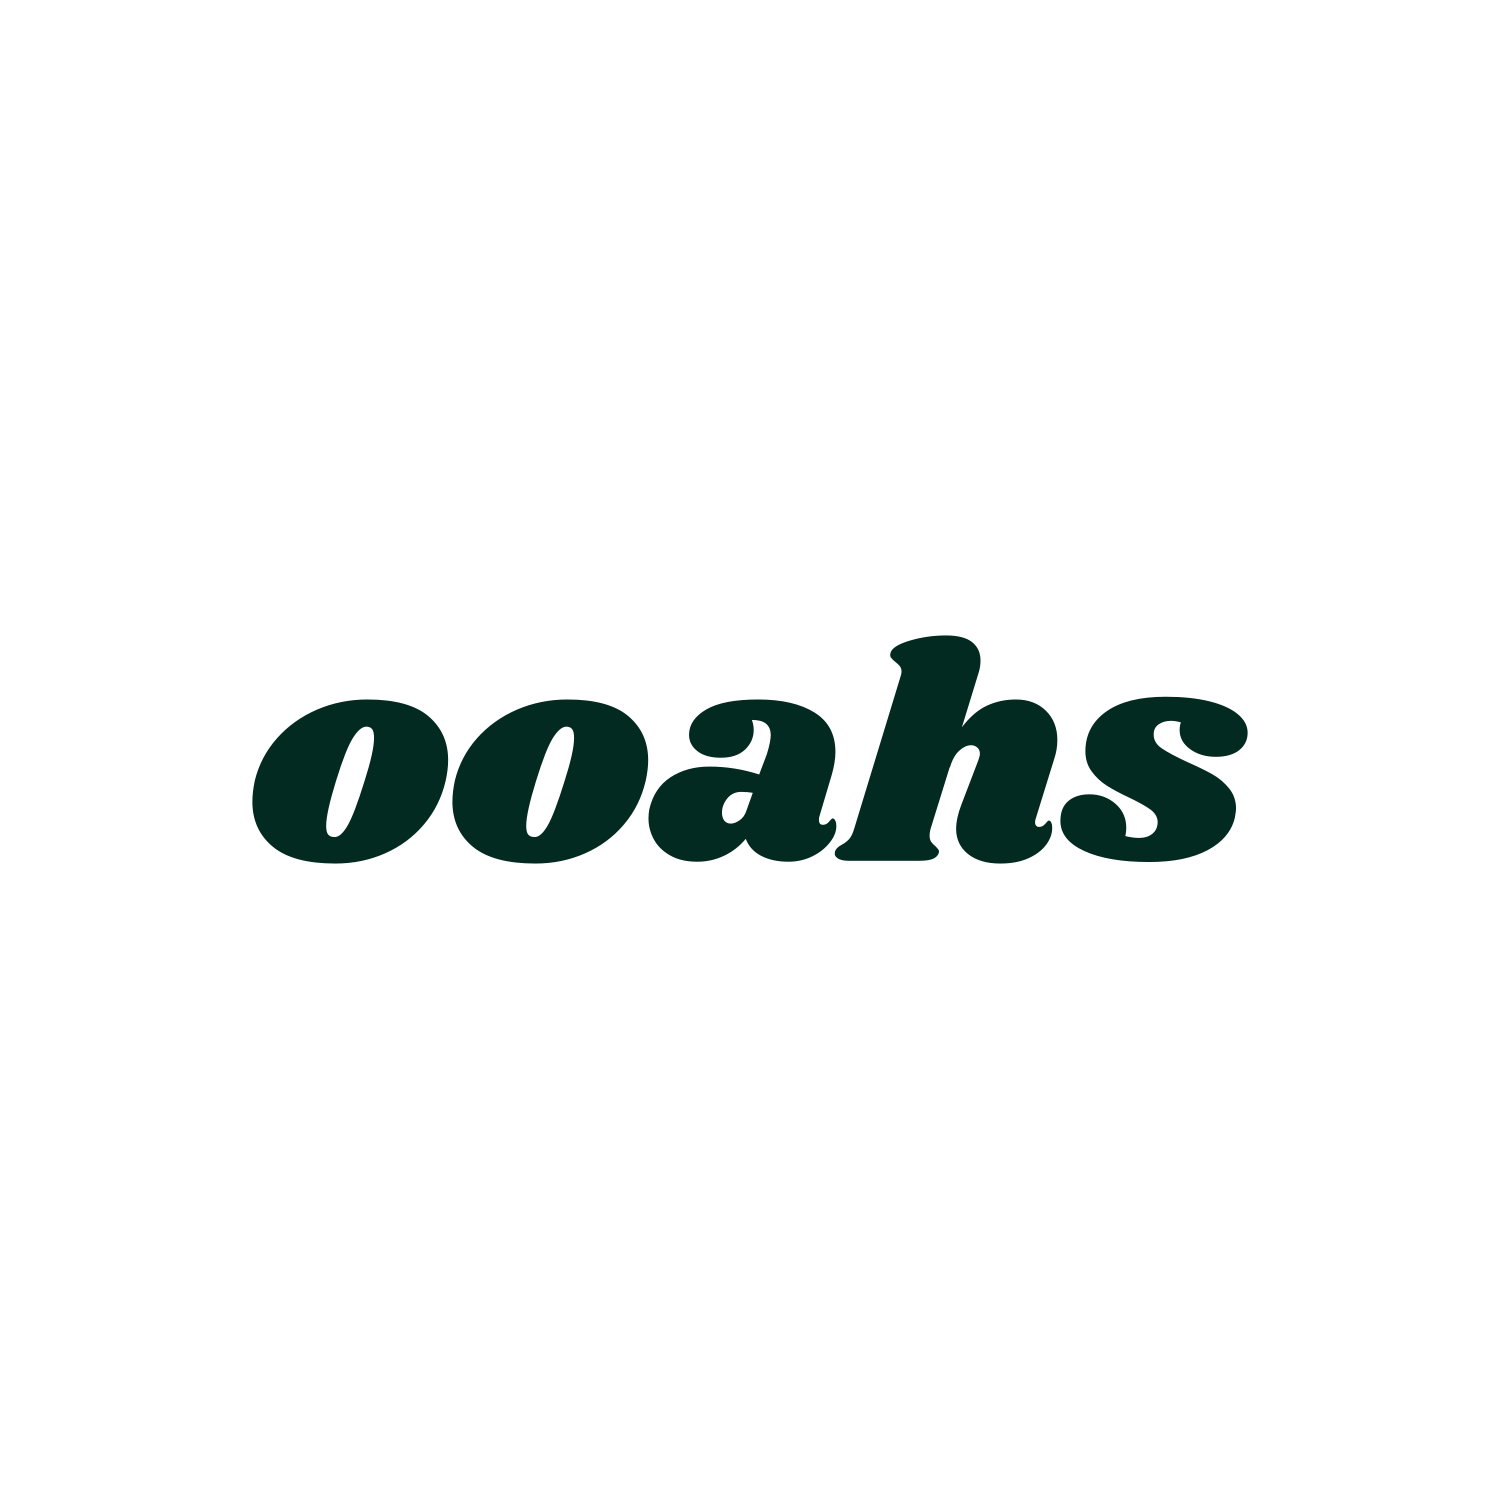 ooahs logo